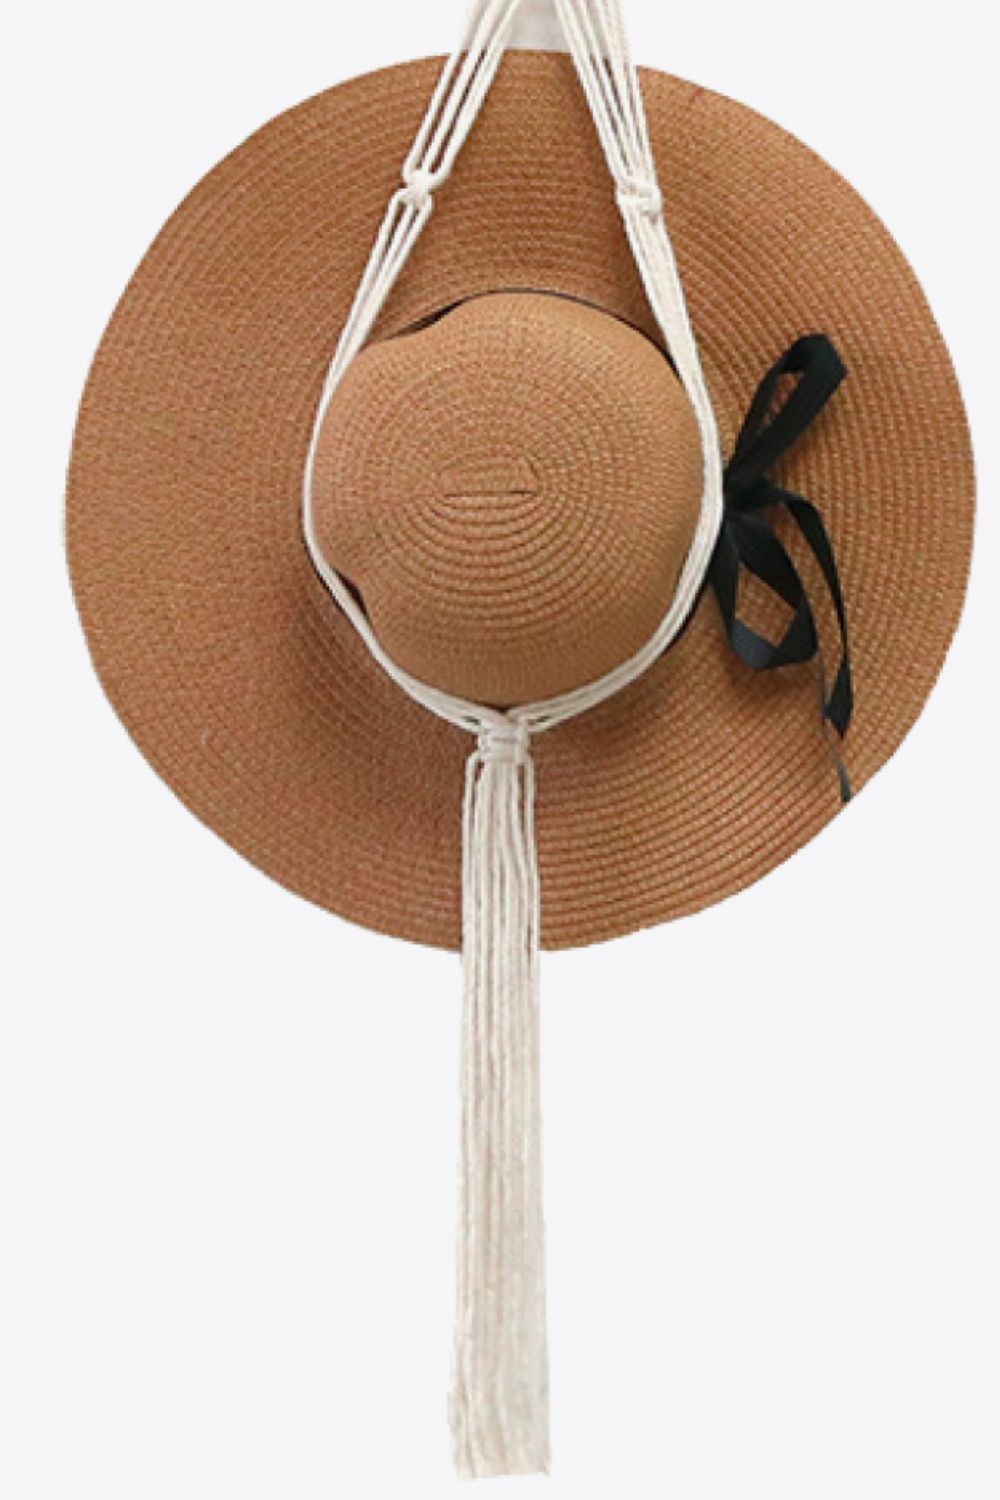 Macrame Hat Hanger The Stout Steer